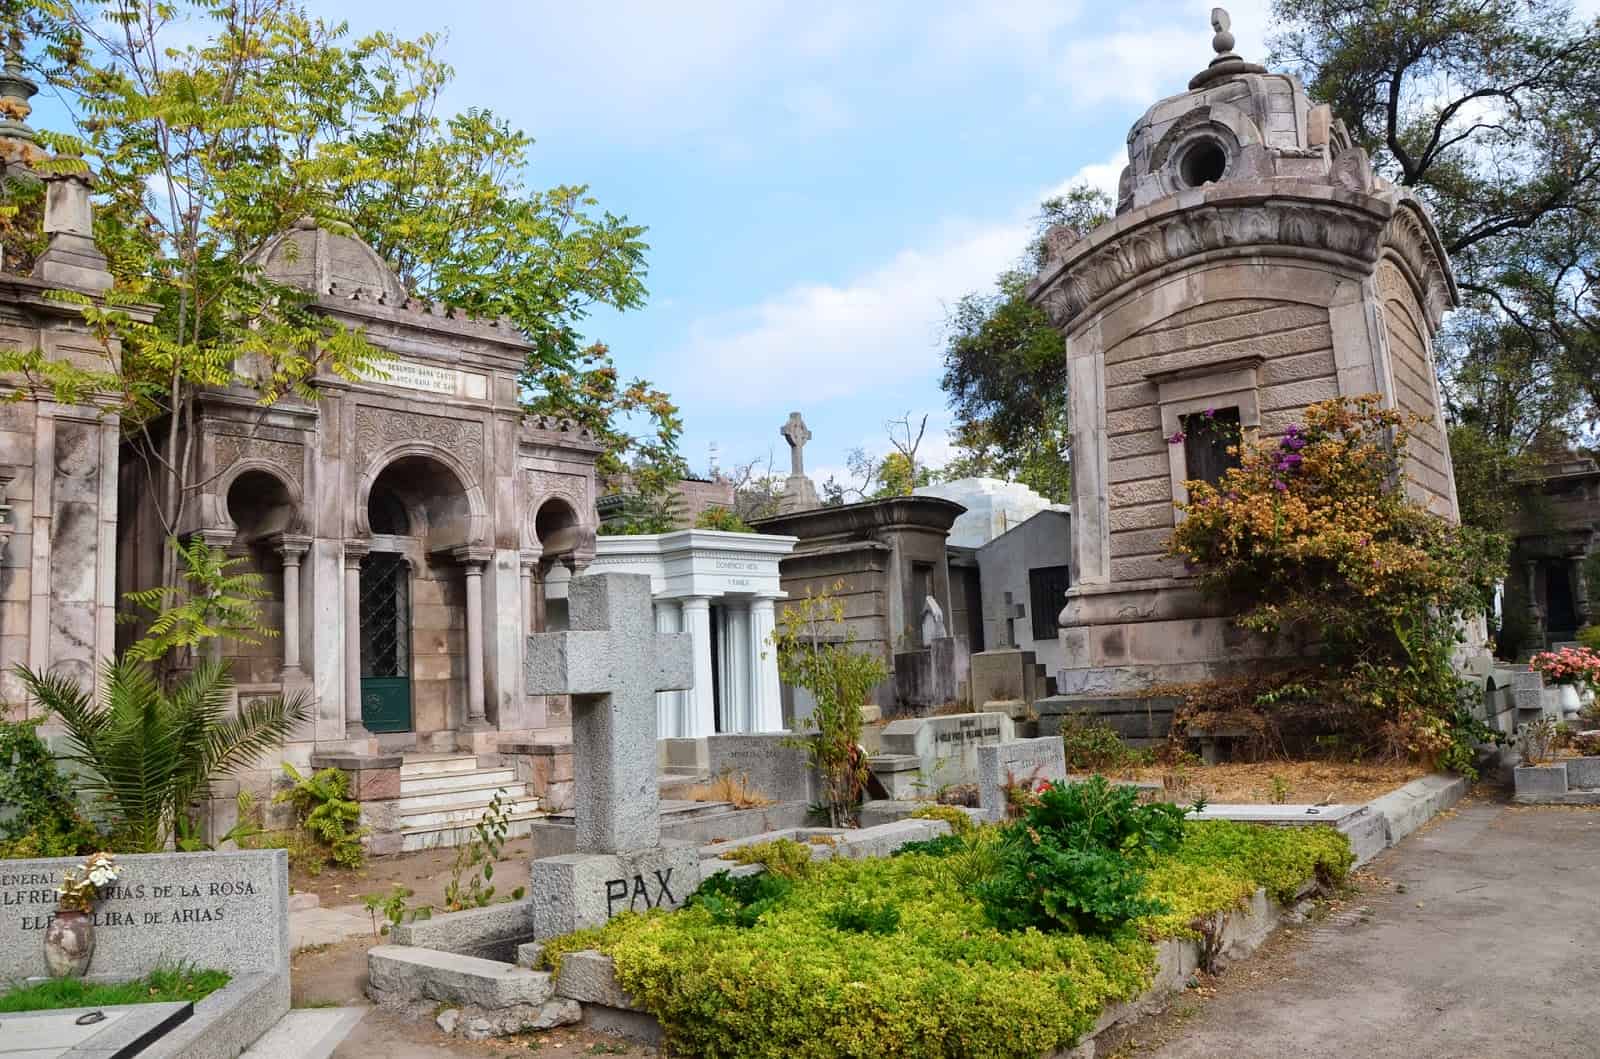 Cementerio General in Santiago de Chile